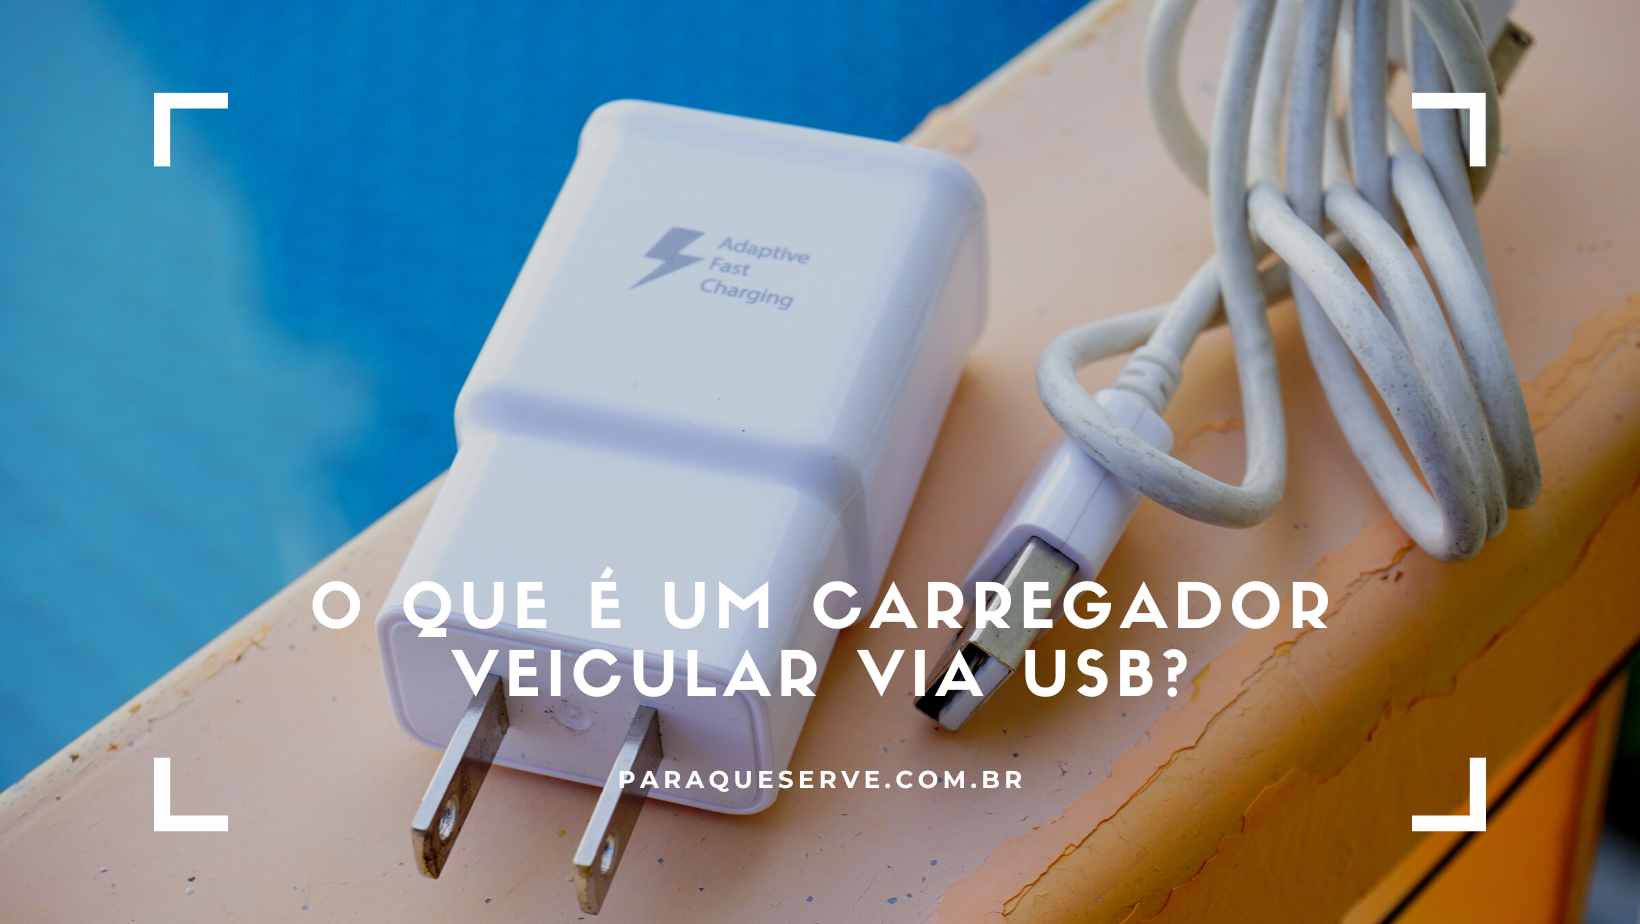 O que é um carregador veicular via USB